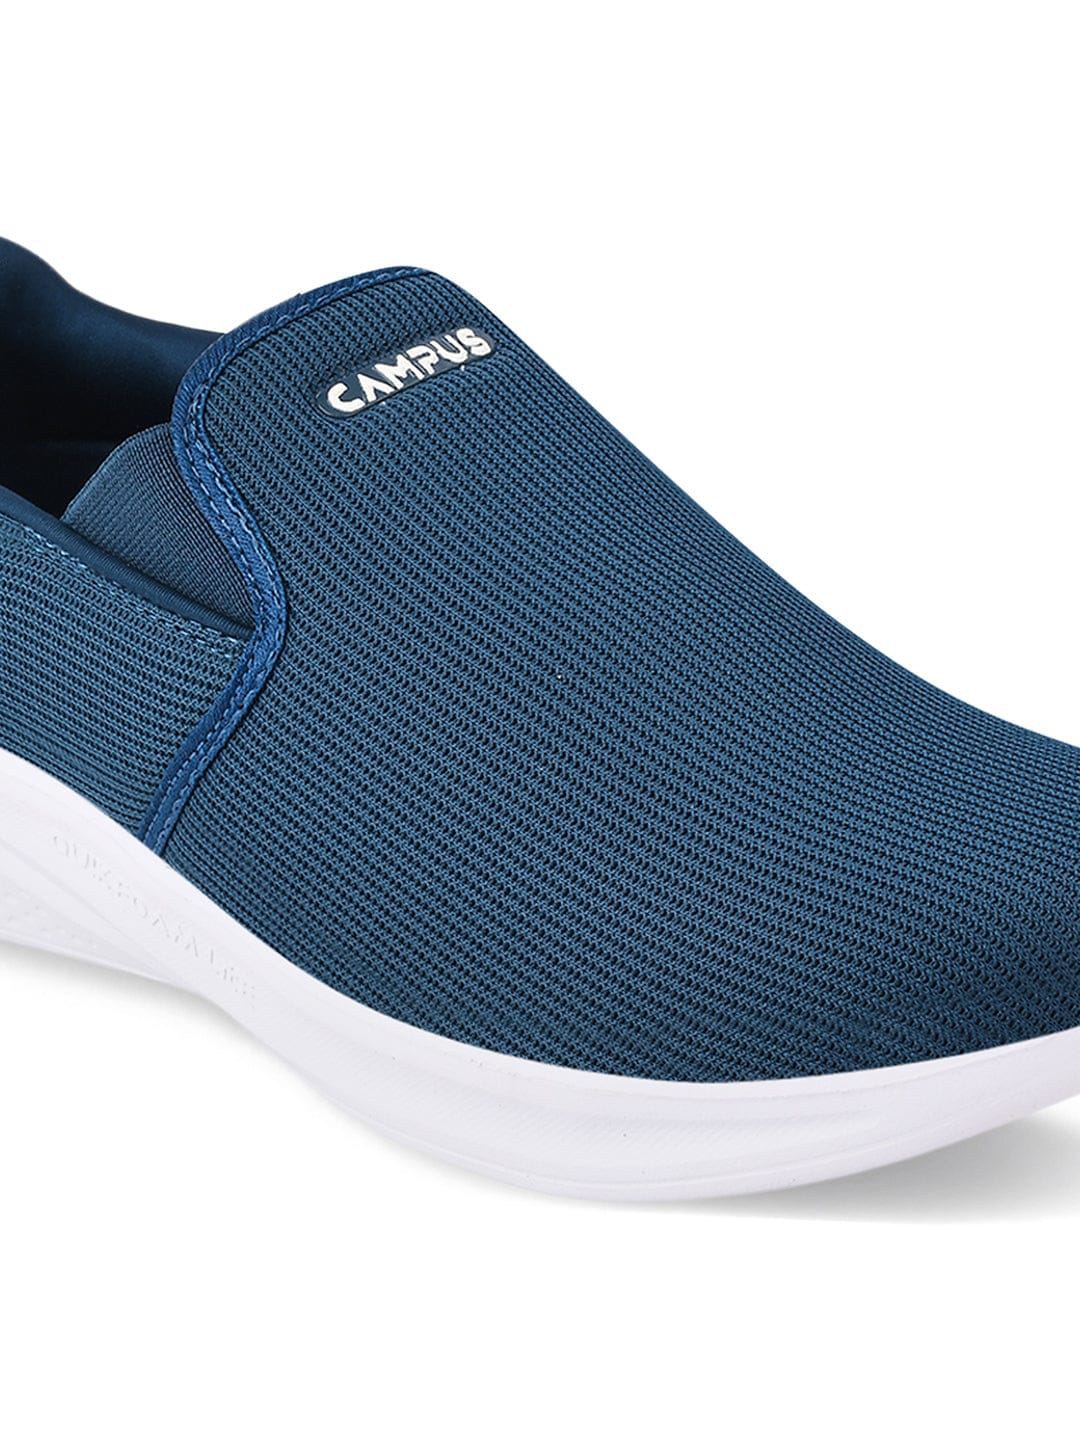 Buy BILLION Blue Men's Casual Shoes online | Campus Shoes